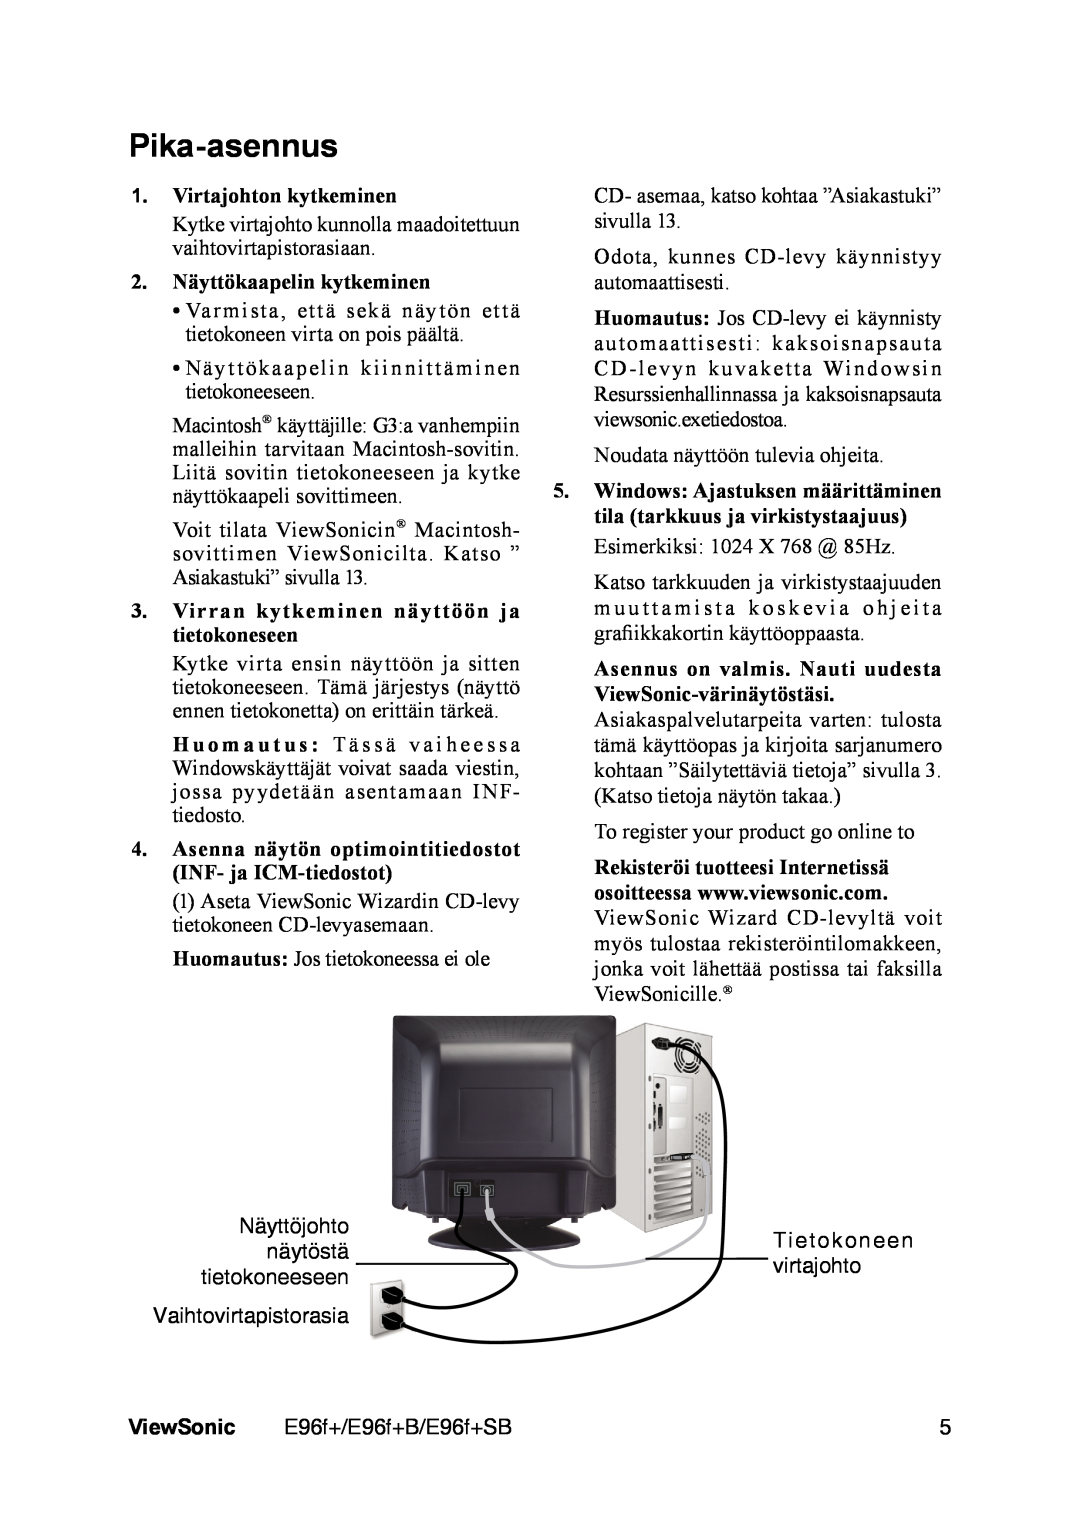 ViewSonic E96f+ manual Pika-asennus, Virtajohton kytkeminen, 2. Näyttökaapelin kytkeminen, ViewSonic 